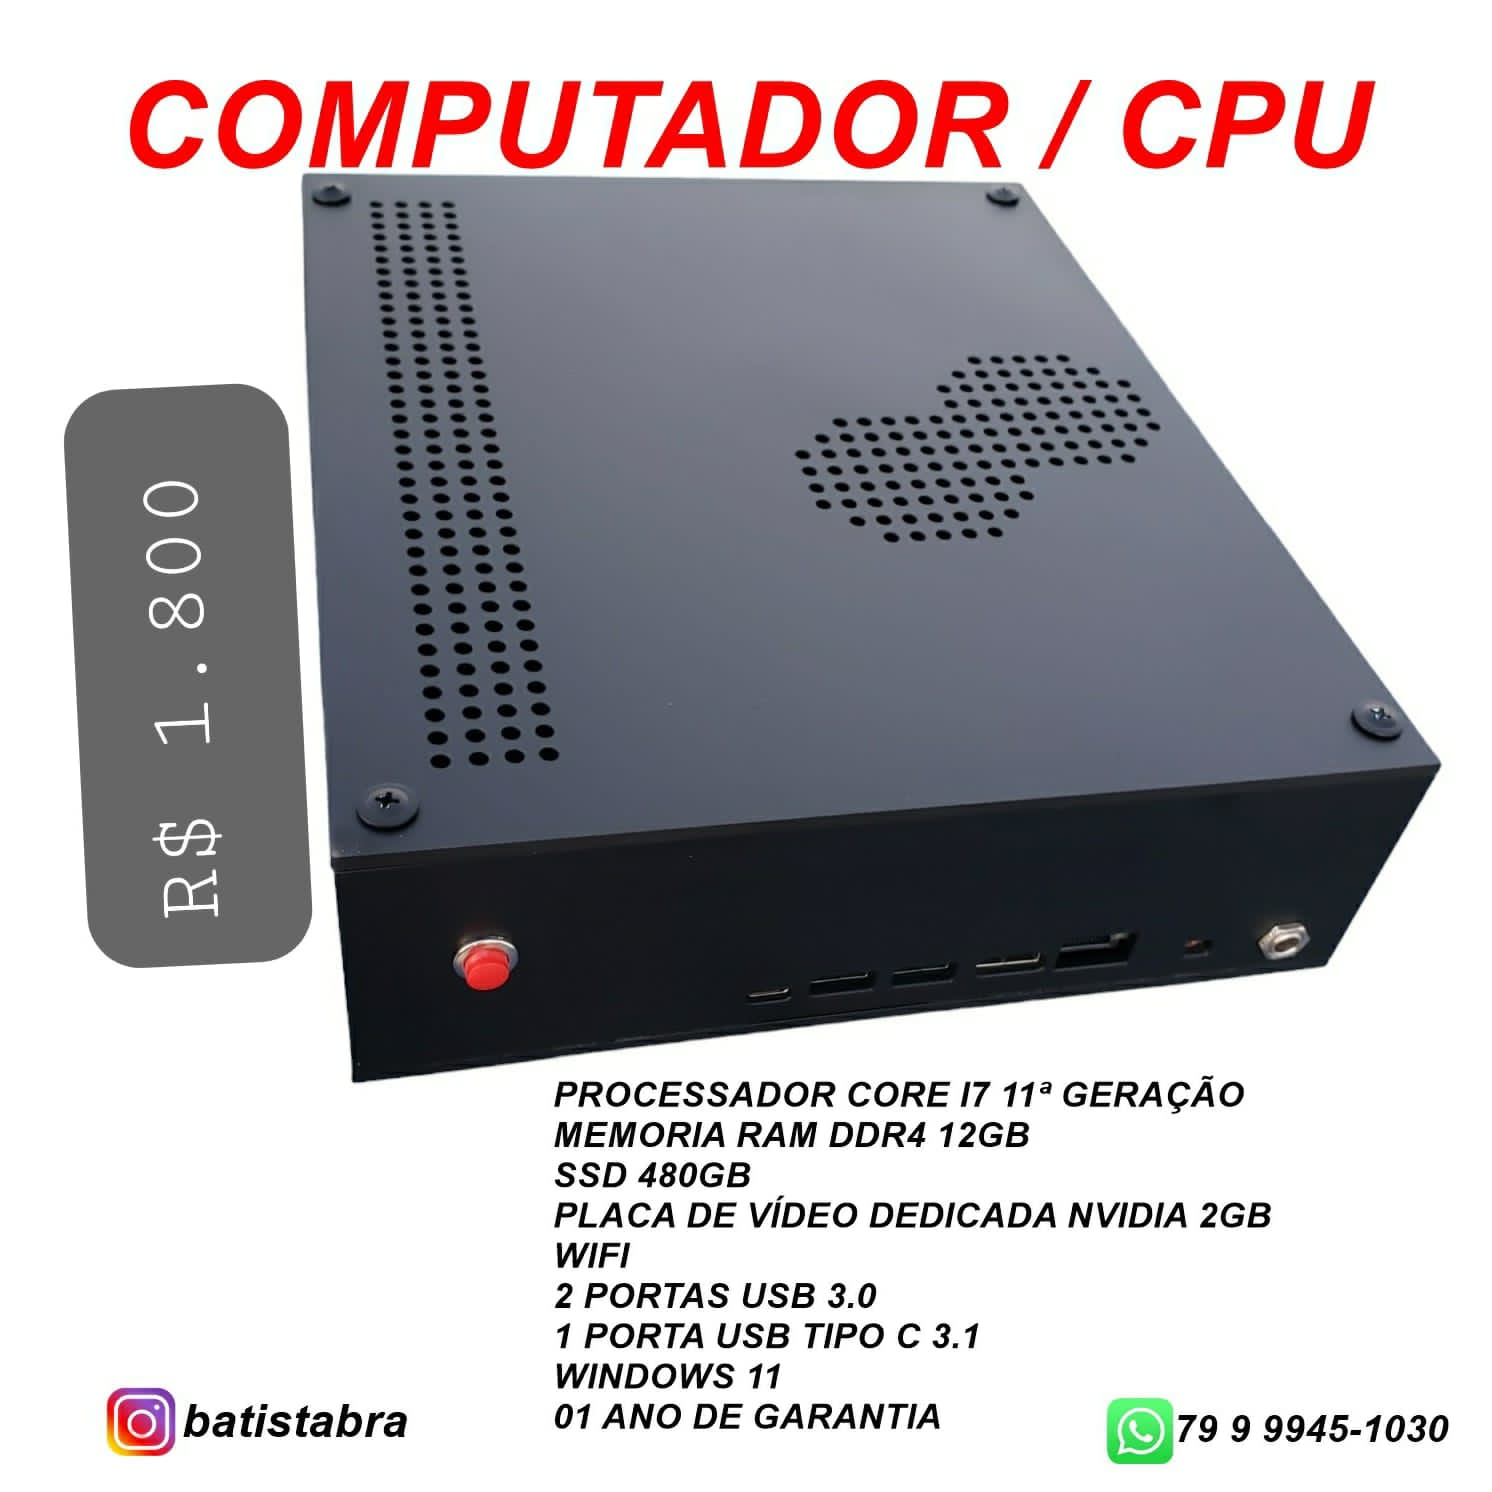 COMPUTADOR CPU: COMPRE LOGO O SEU; R$ 1.800,00